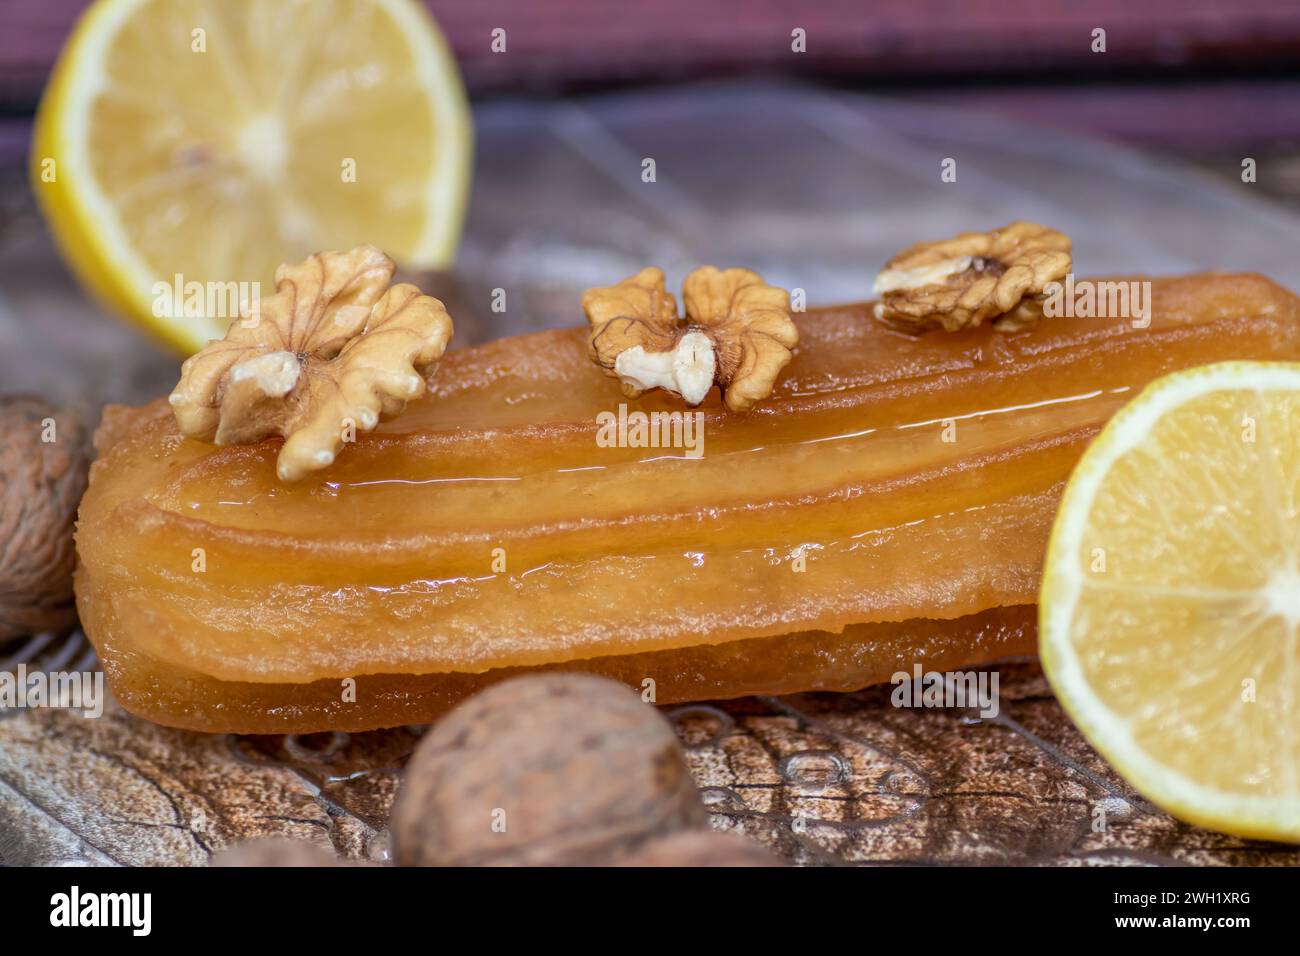 Türkischer süßer Kuchen namens Tulumba, serviert auf einem Teller mit Zitronenscheiben und Nüssen, auf einem massiven Holztisch Stockfoto